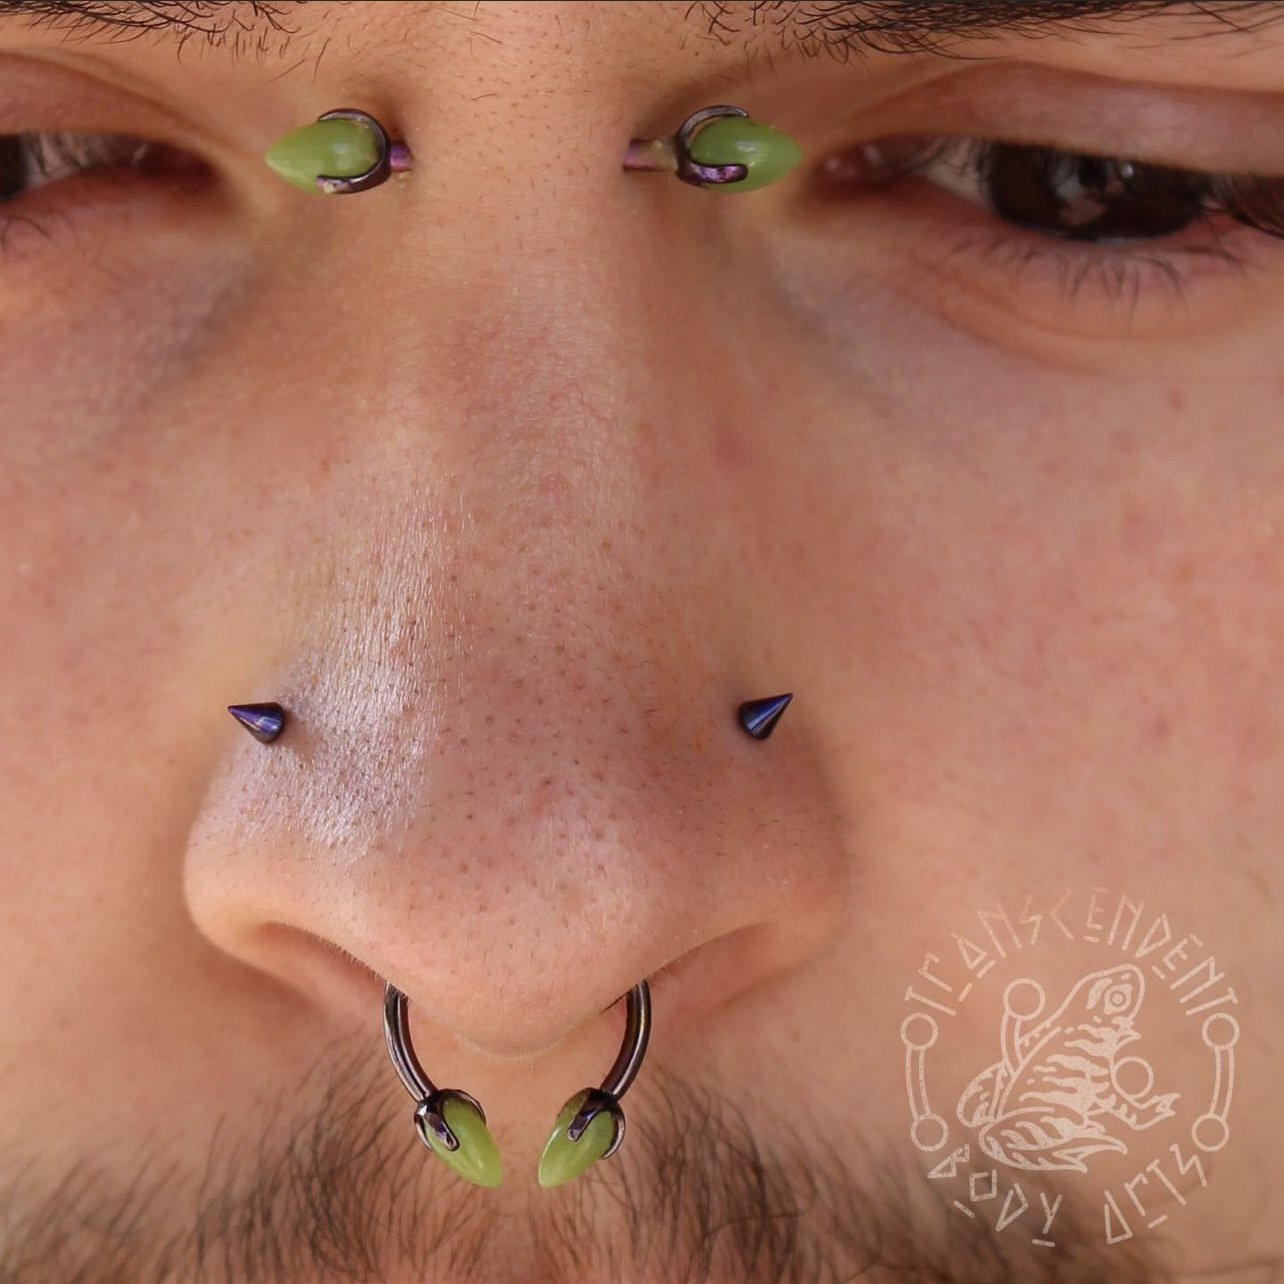 Painless nose piercing  Nose piercing, Piercing, Piercing studio